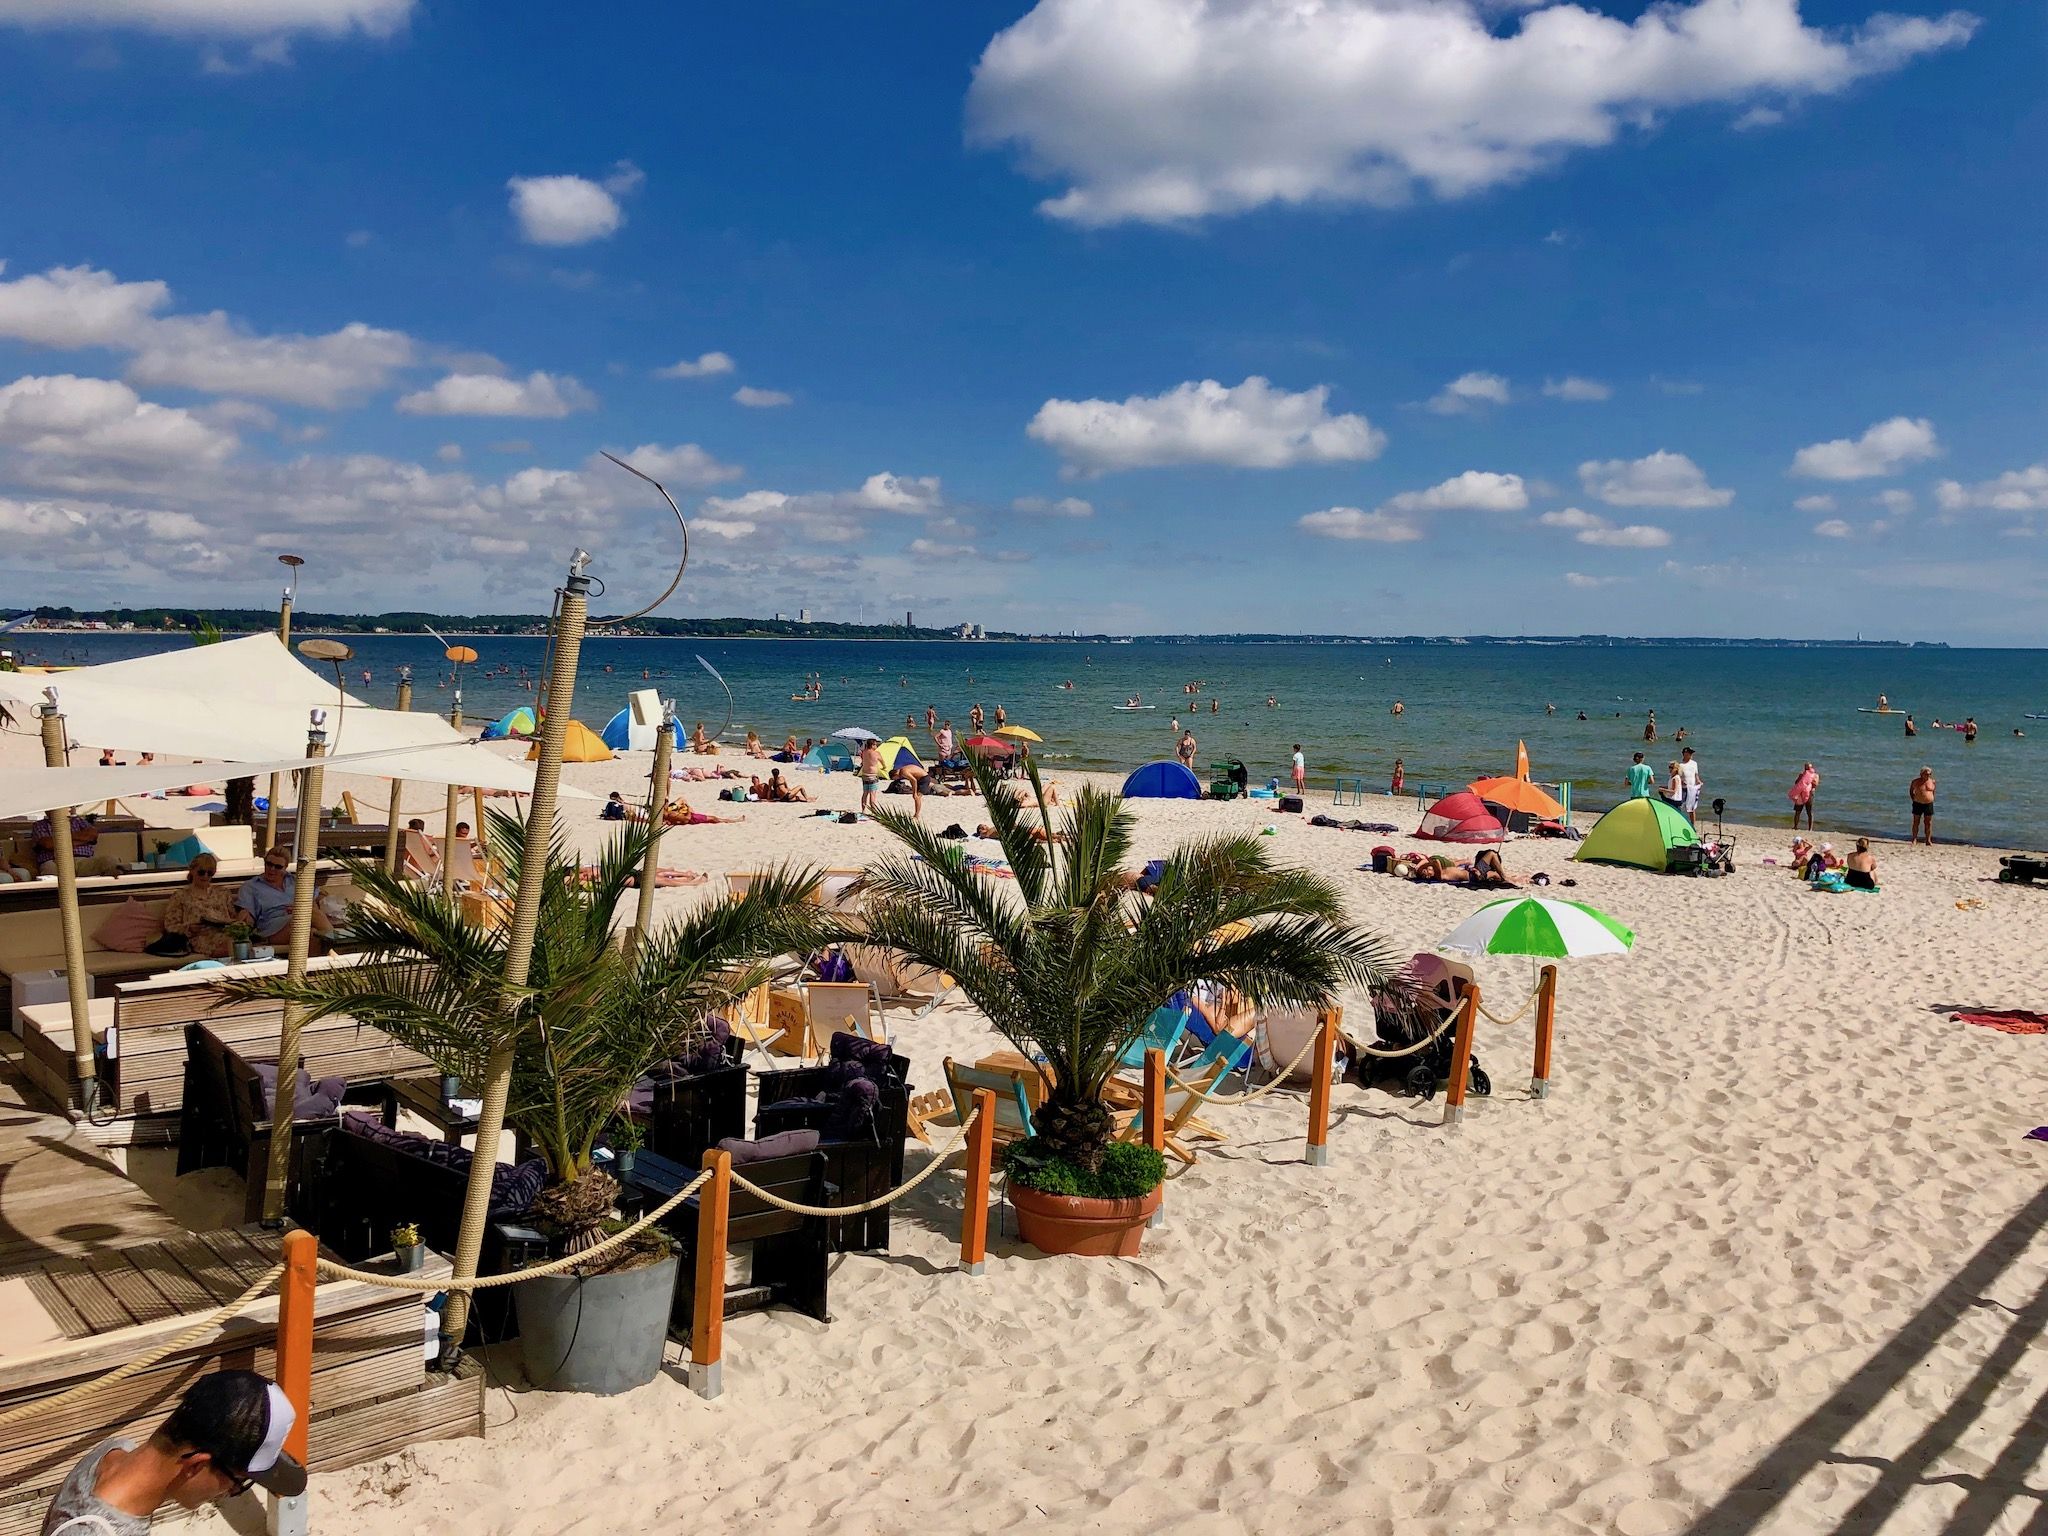 Ons reisverslag van Scharbeutz met waardevolle insider-tips voor de perfecte zomervakantie aan de Baltische kust. Foto: Sascha Tegtmeyer